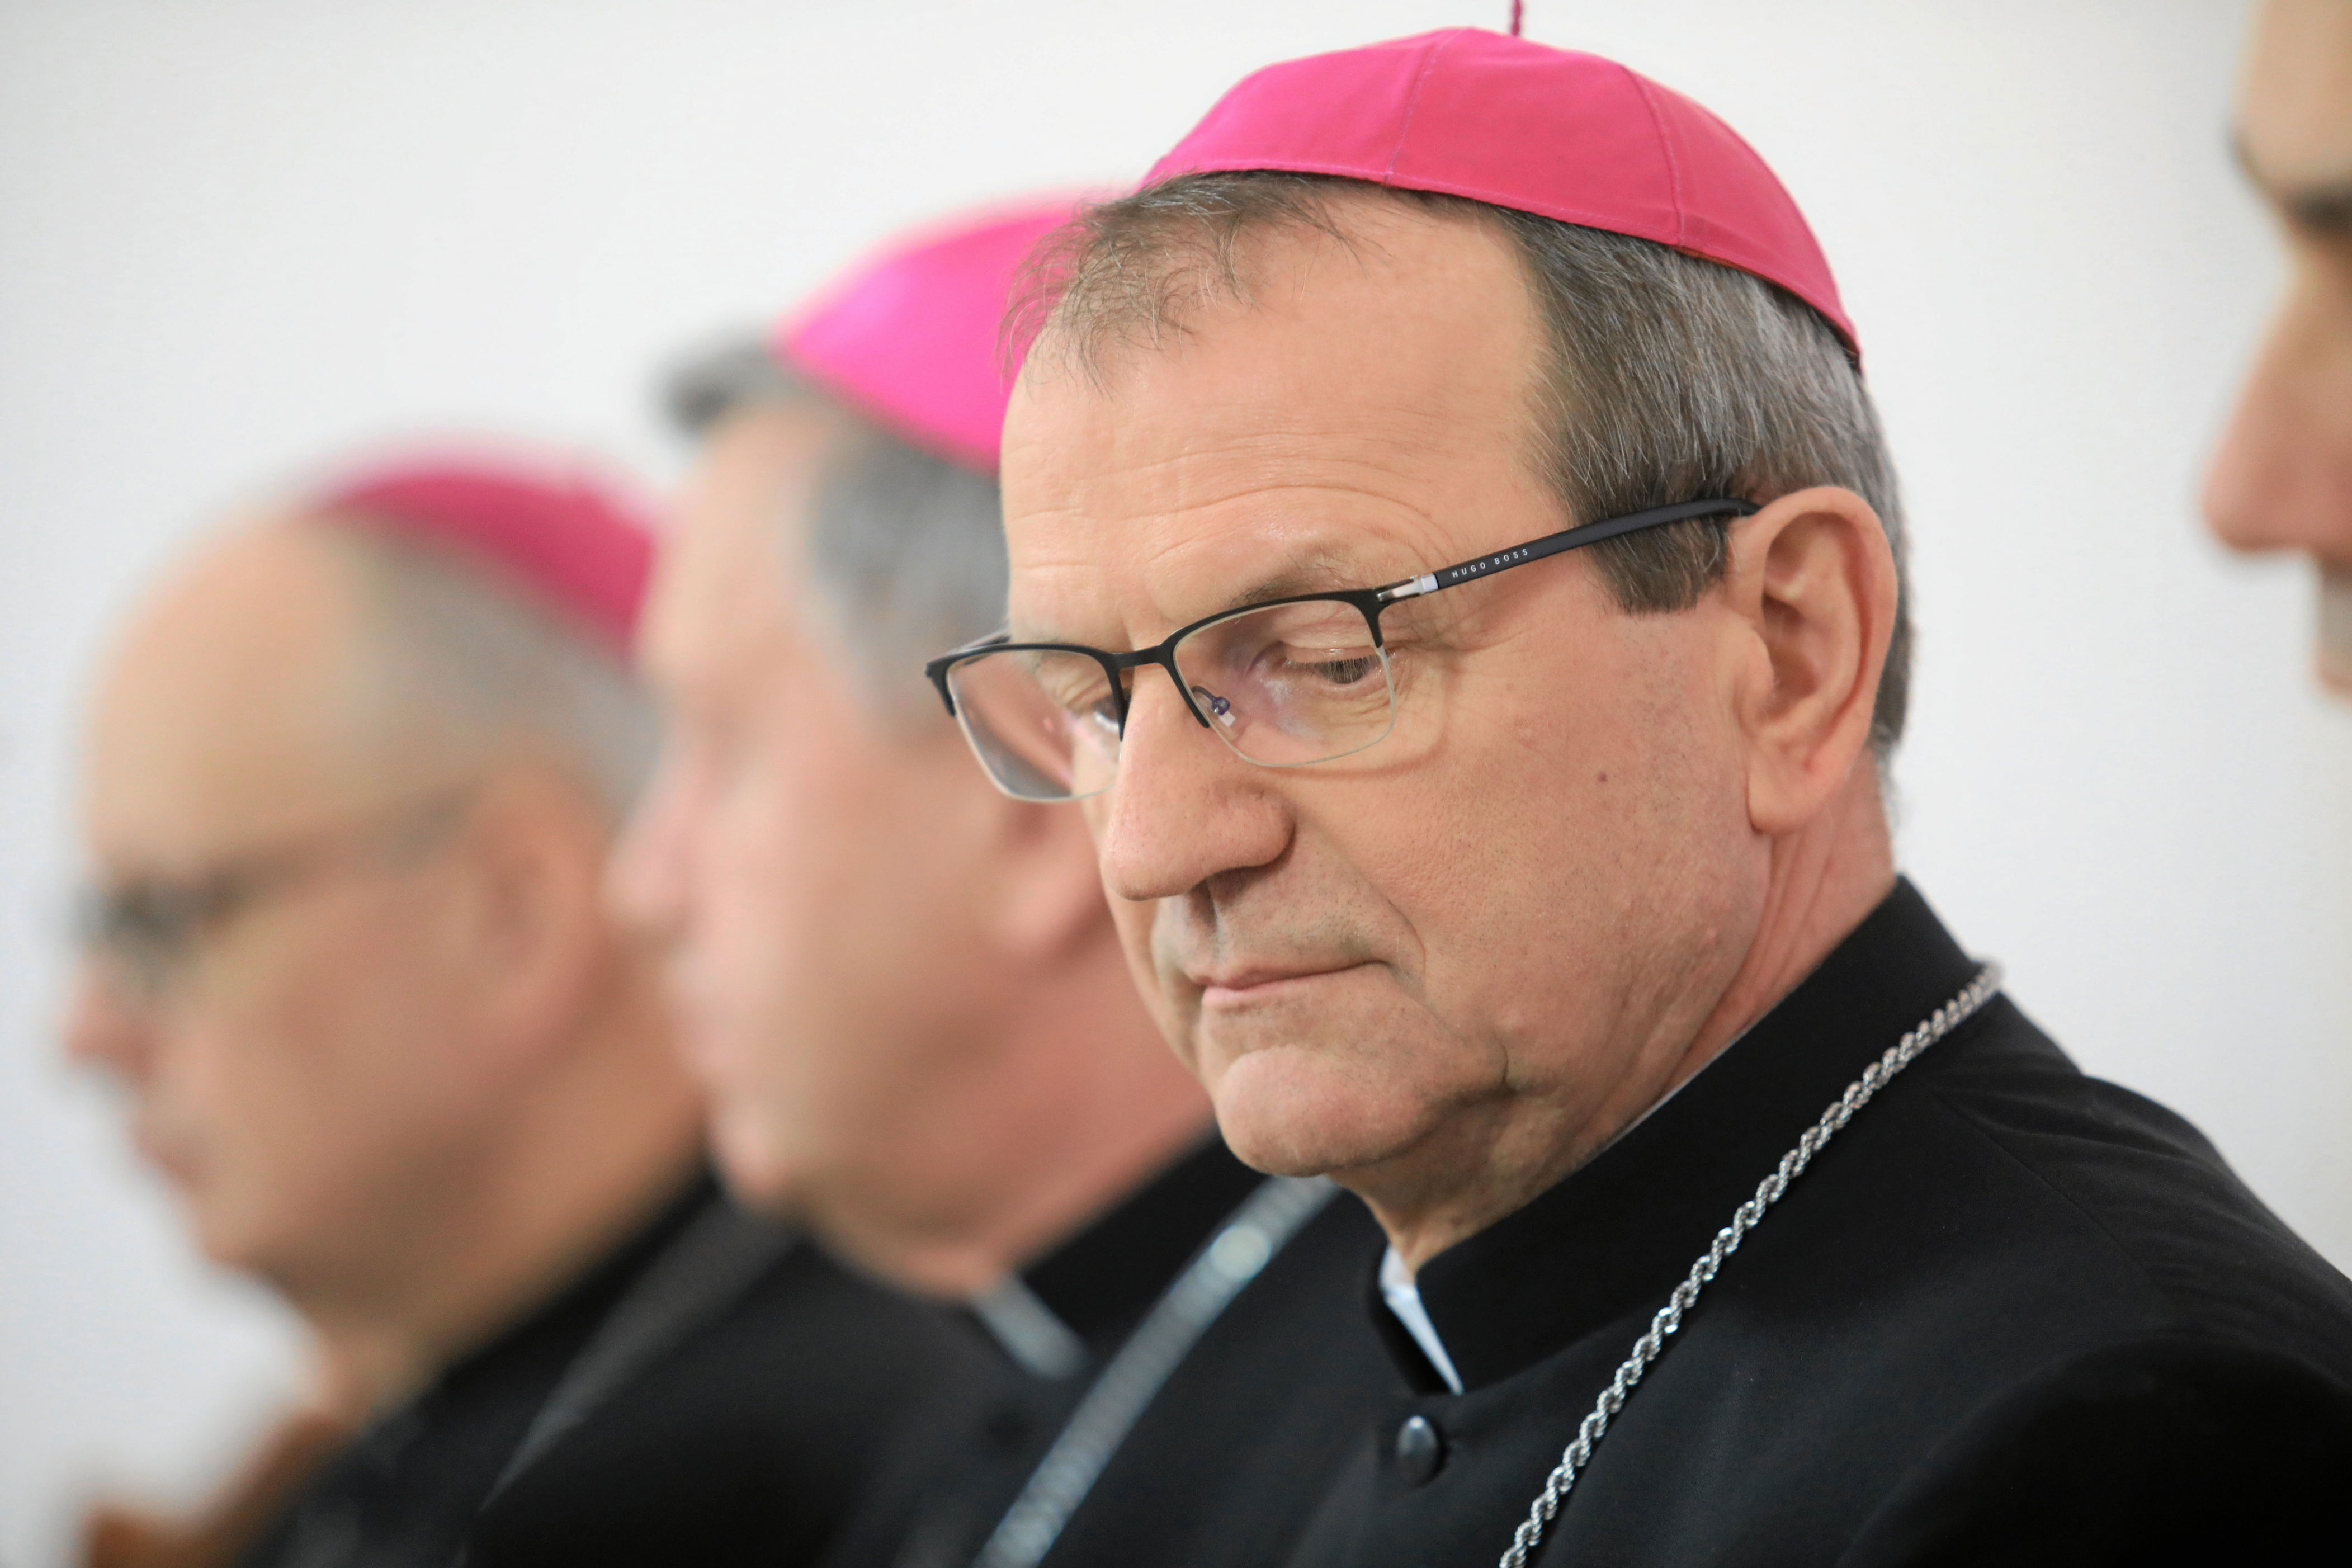 biskupi zaniepokojeni decyzją resortu nowackiej. domagają się rozmów